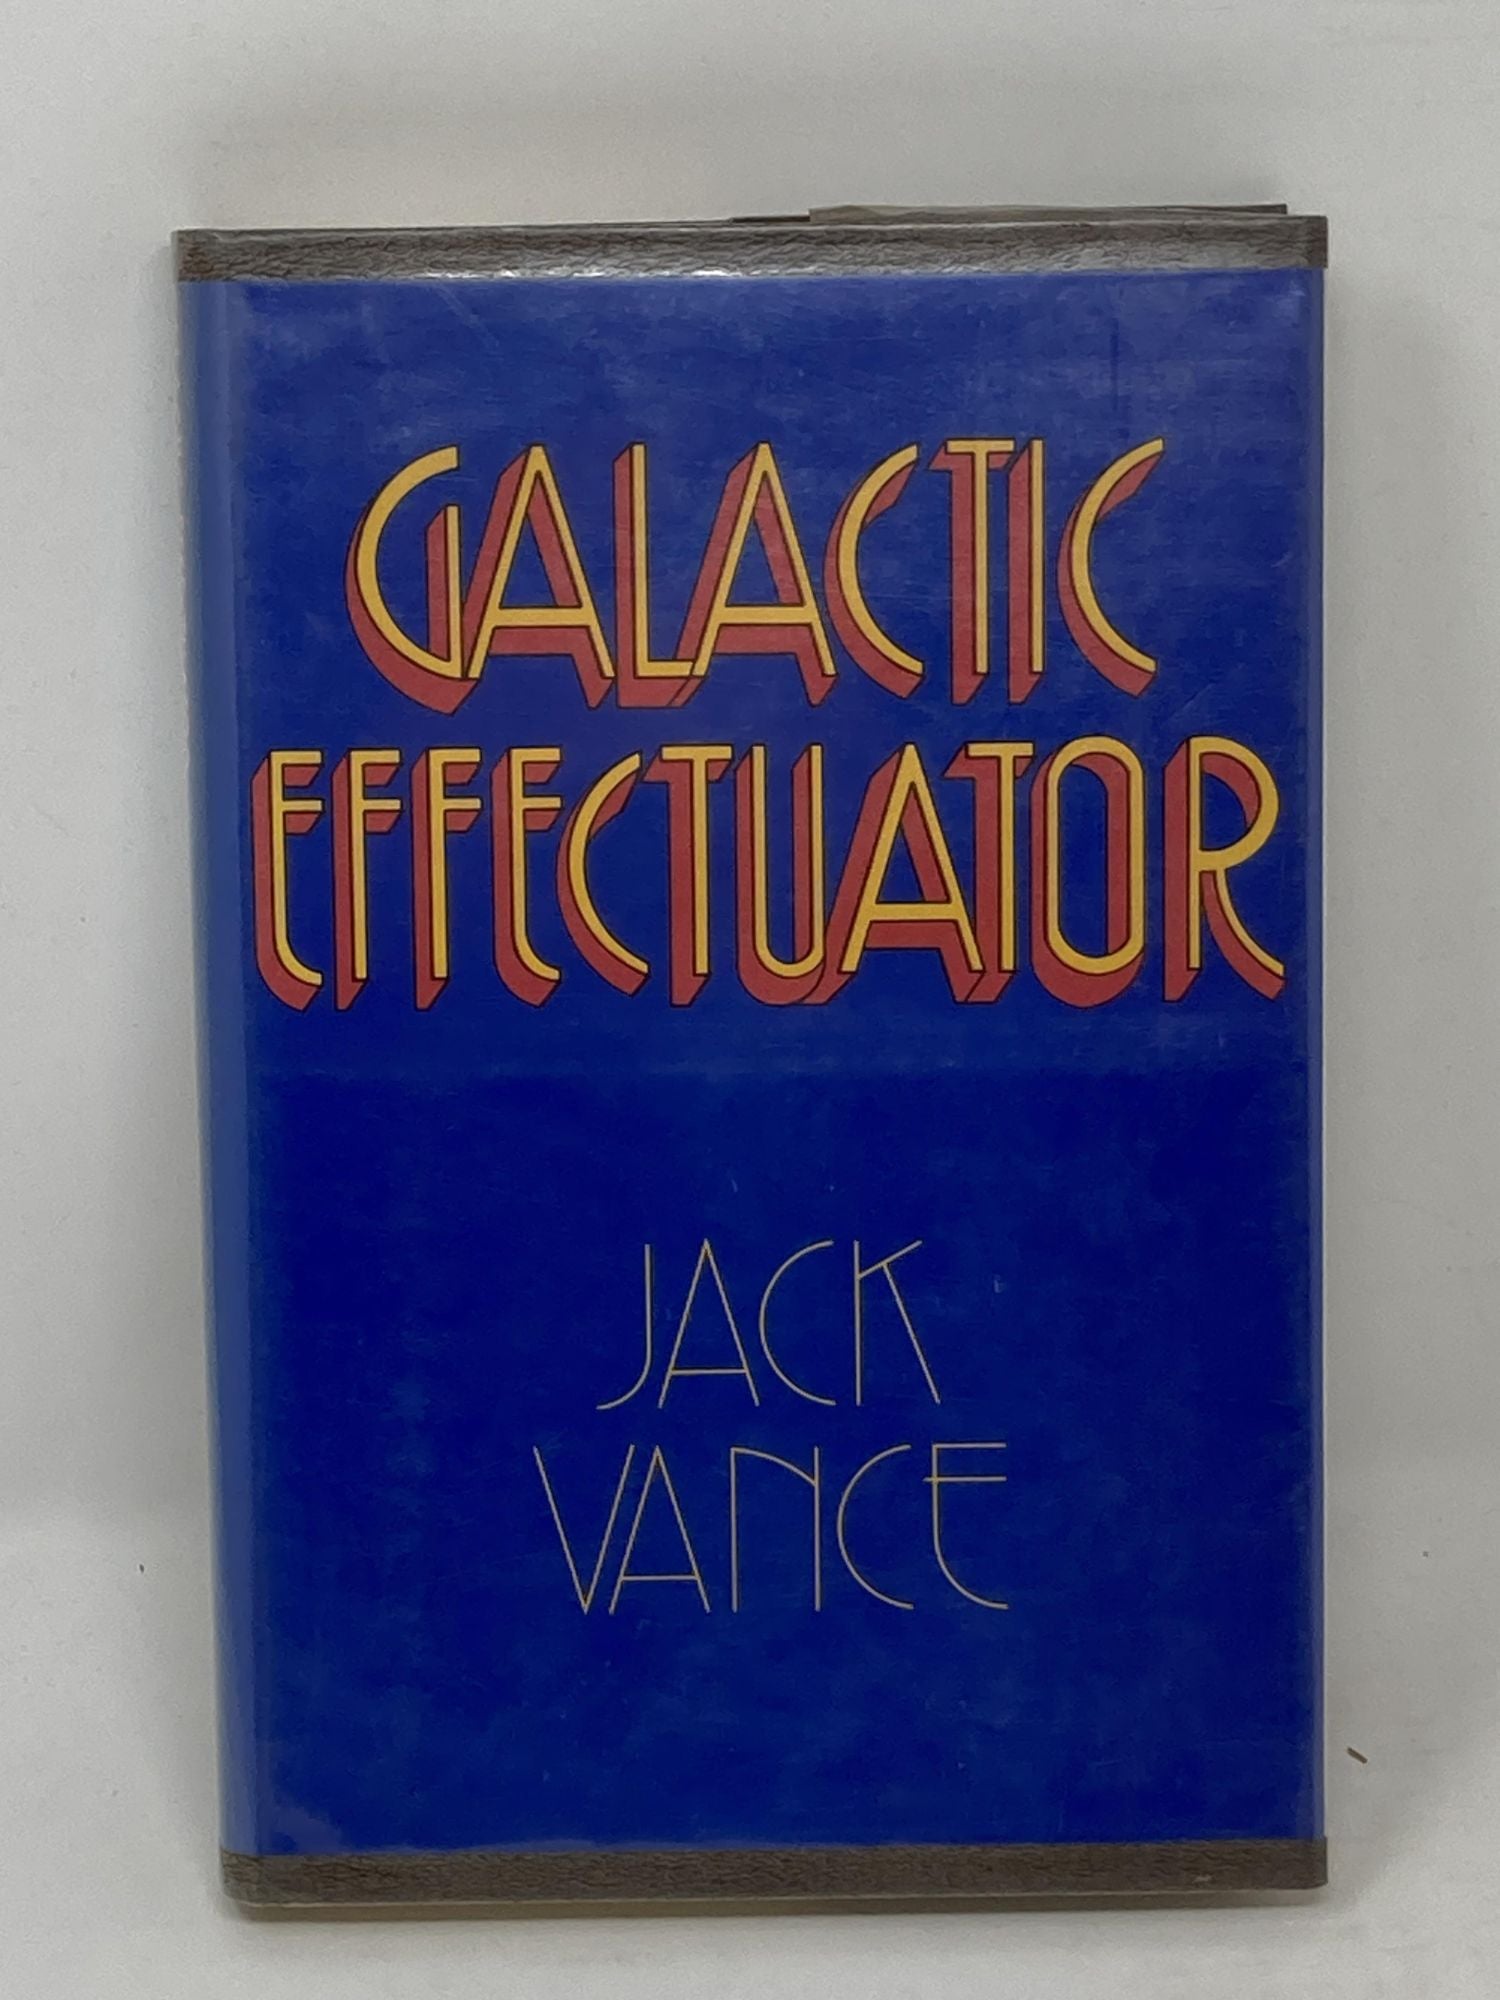 Vance, Jack - Galactic Effectuator